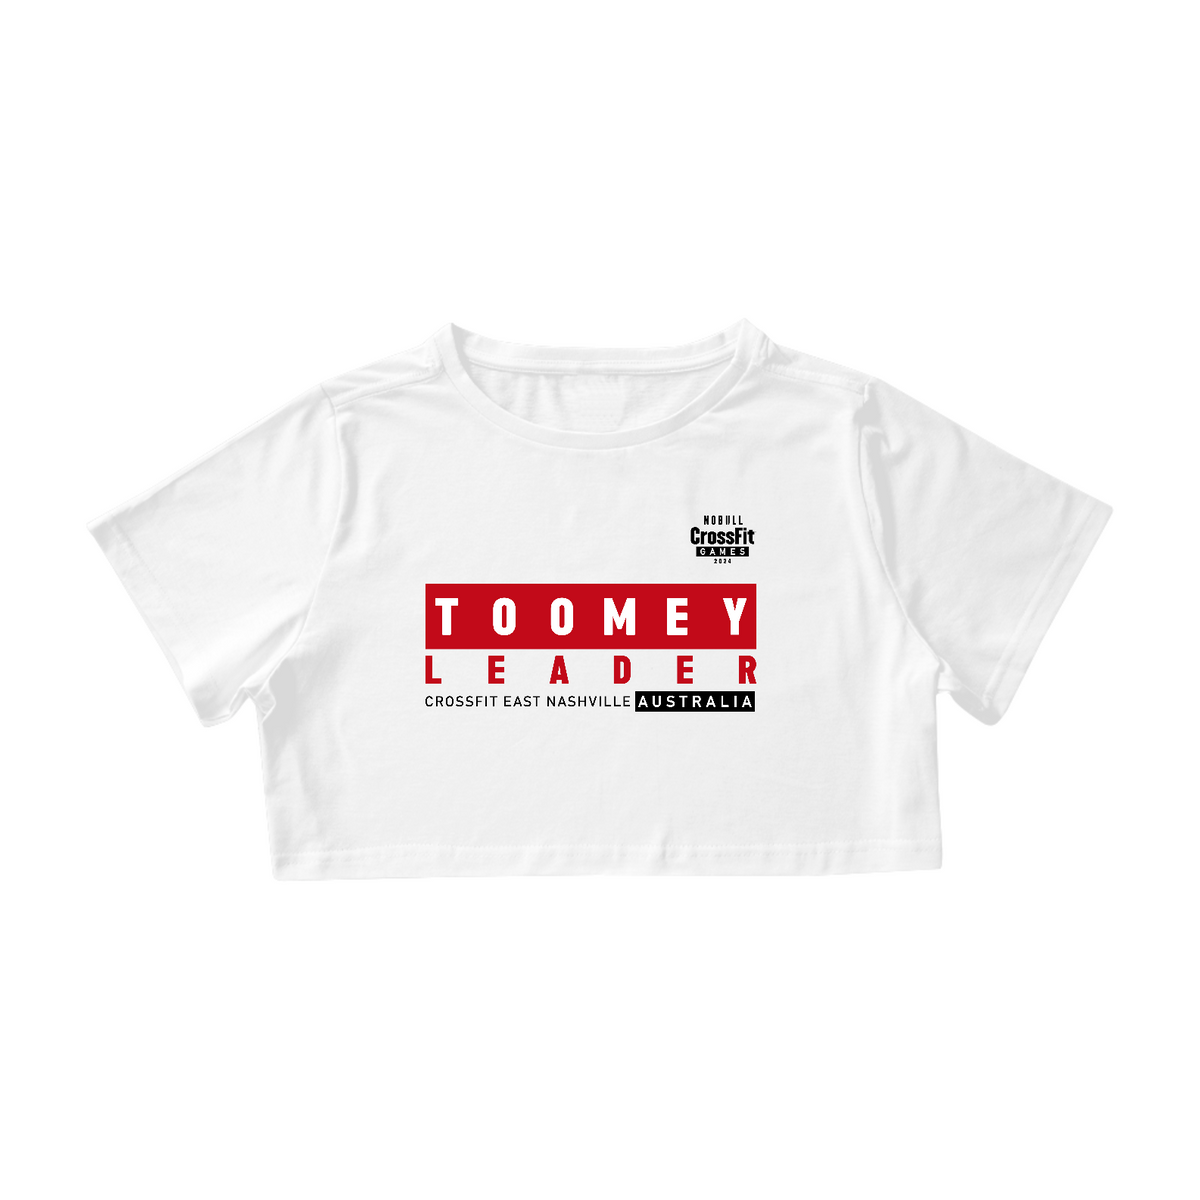 Nome do produto: Toomey LEADER